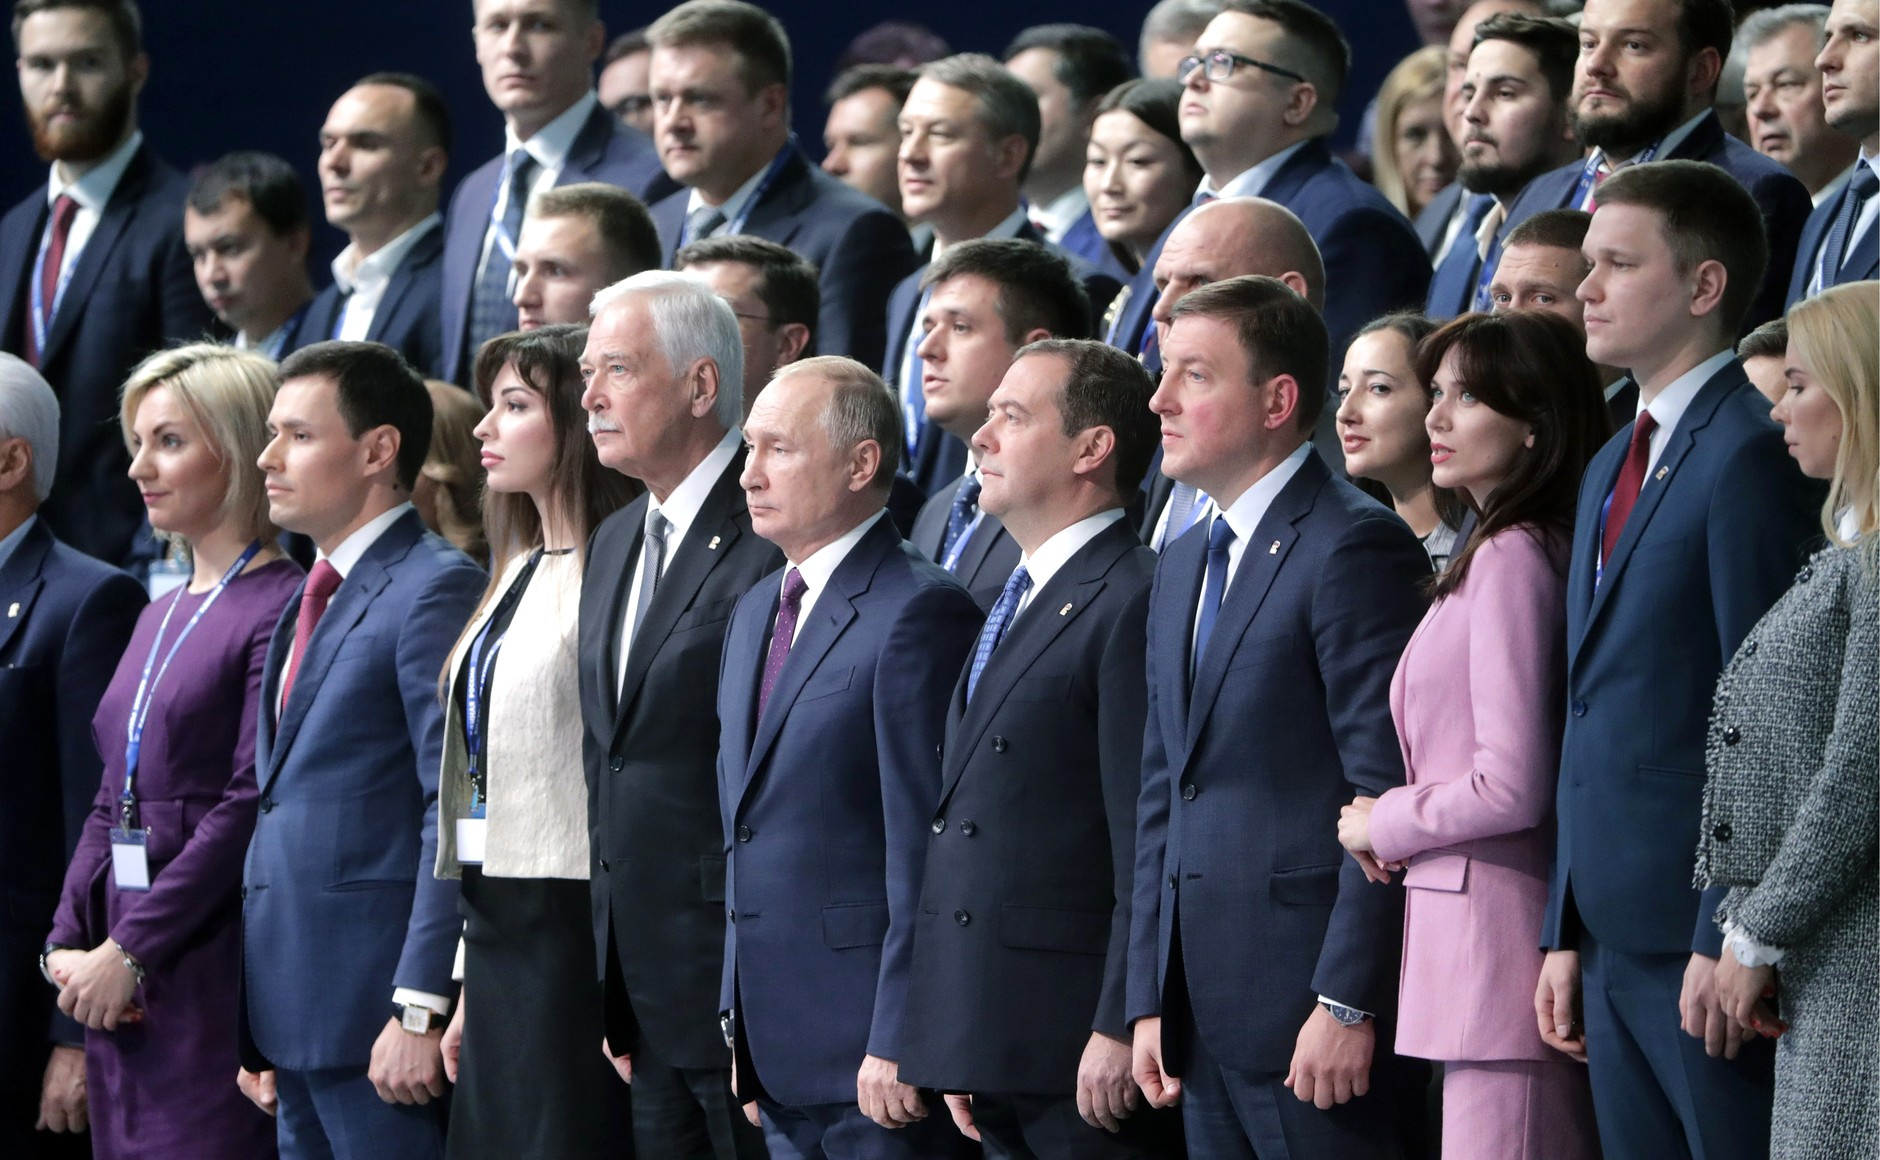 съезд «Единой России» в 2019 году, Наталья Абрамова крайняя слева в первом ряду